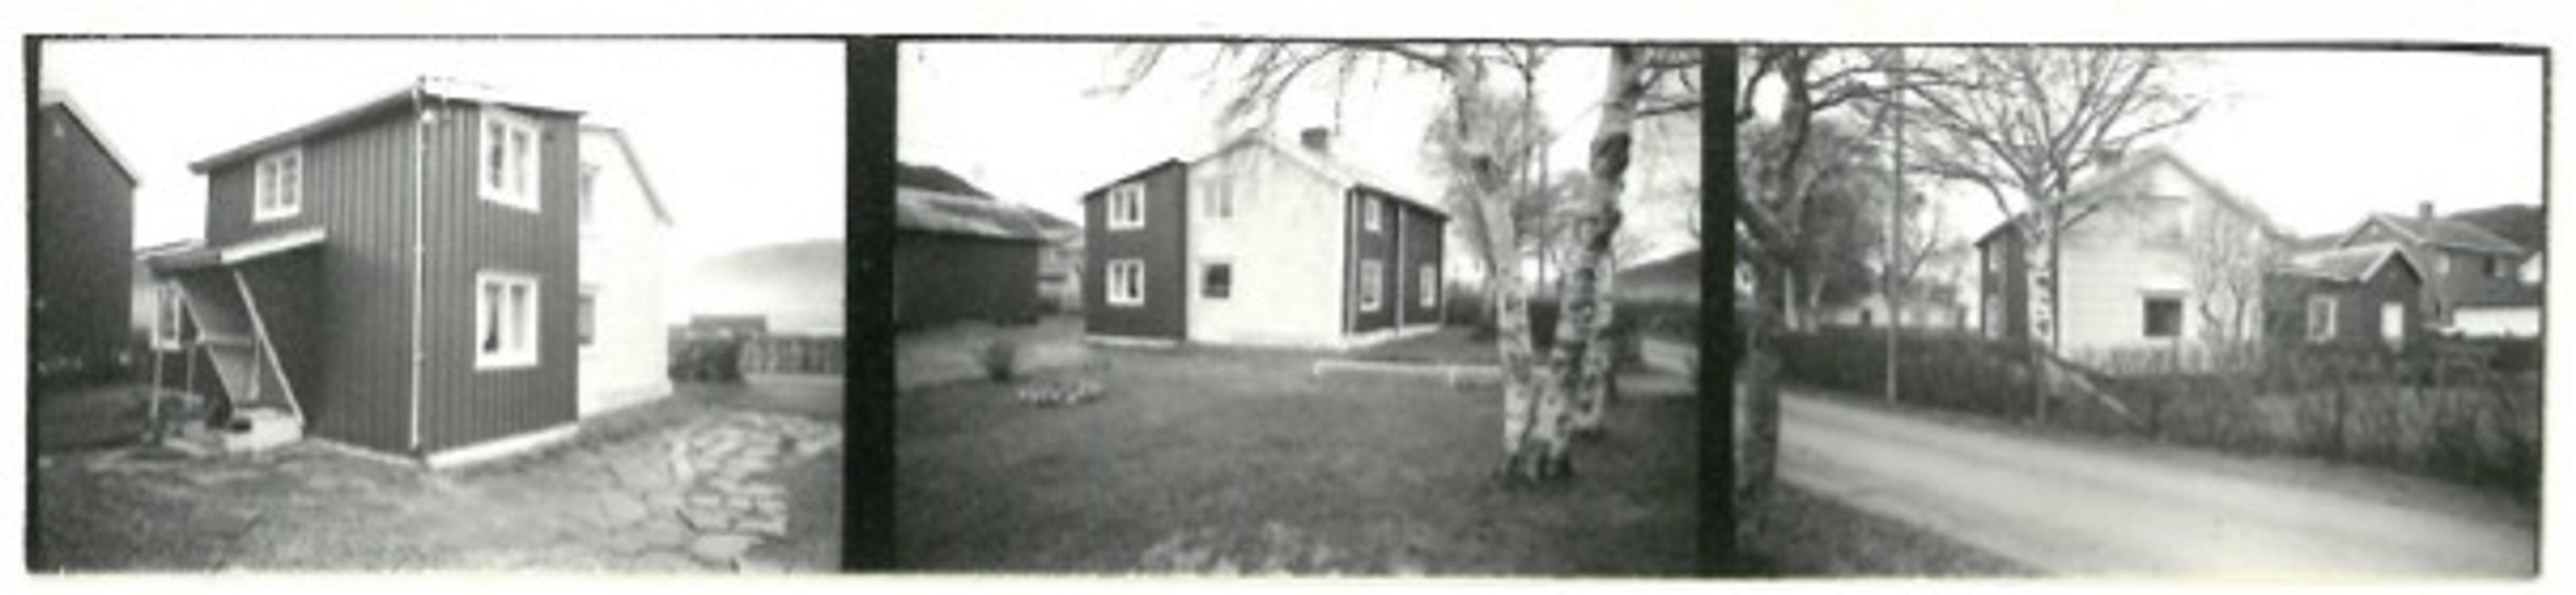 Pevik-huset etter ombyggingen i 1954. Foto: Orkland kommune